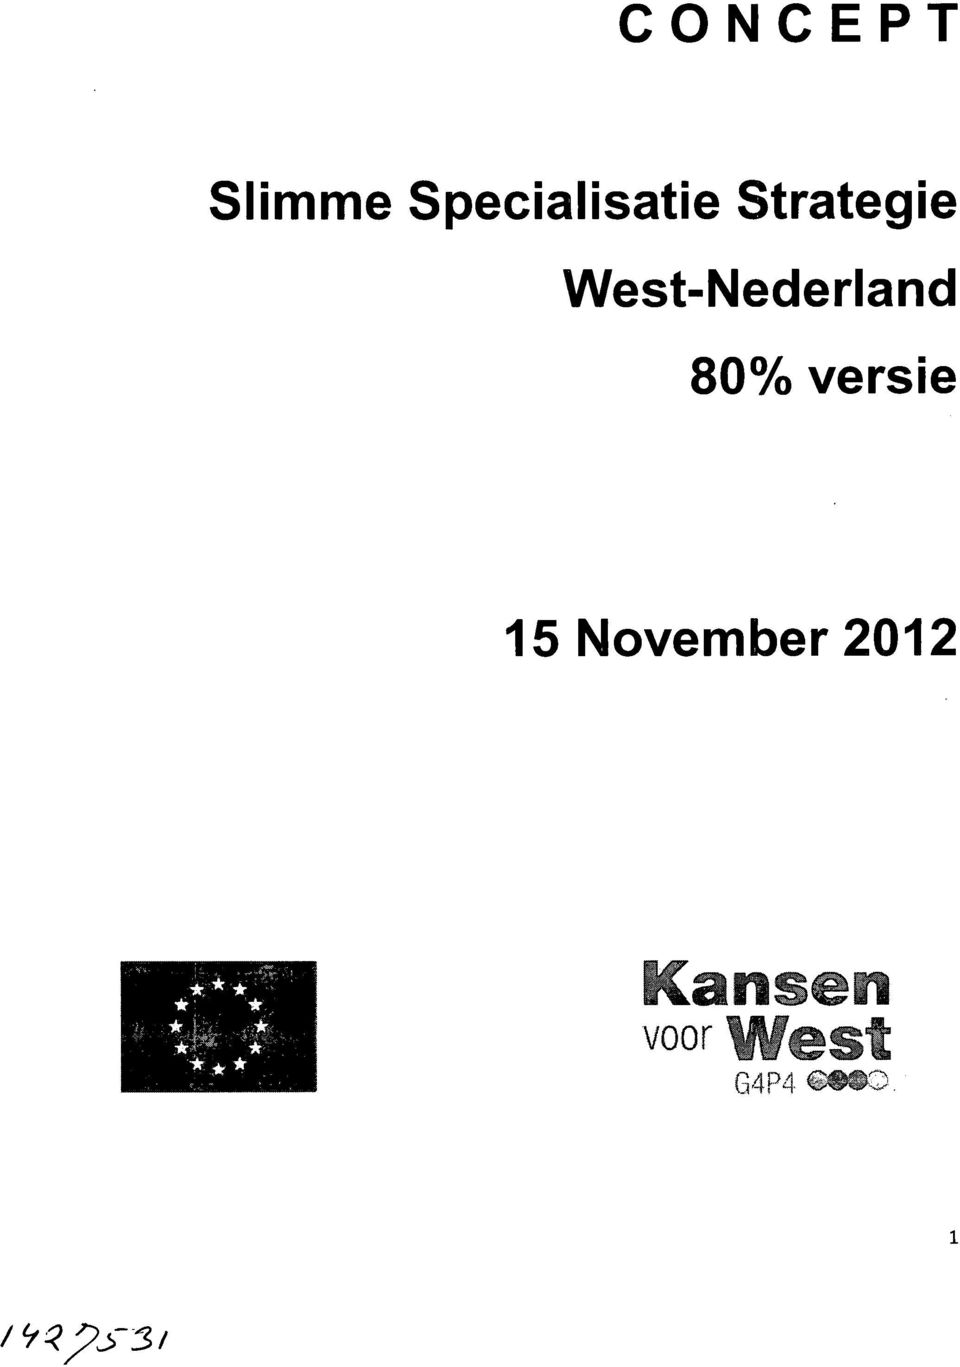 West-Nederland 80% versie